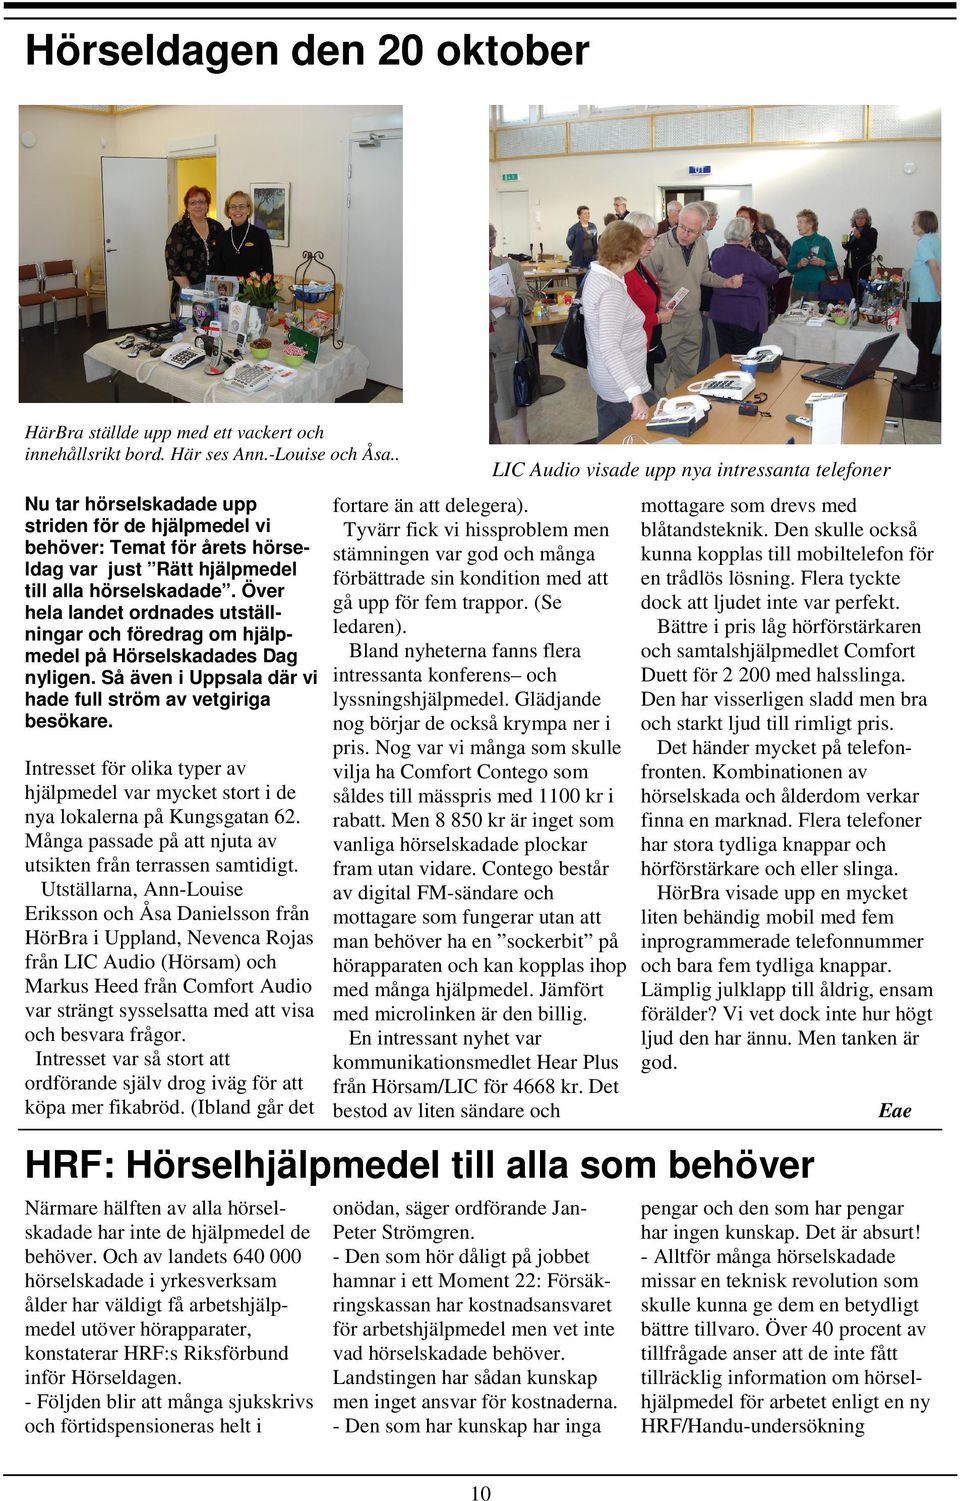 Över hela landet ordnades utställningar och föredrag om hjälpmedel på Hörselskadades Dag nyligen. Så även i Uppsala där vi hade full ström av vetgiriga besökare.